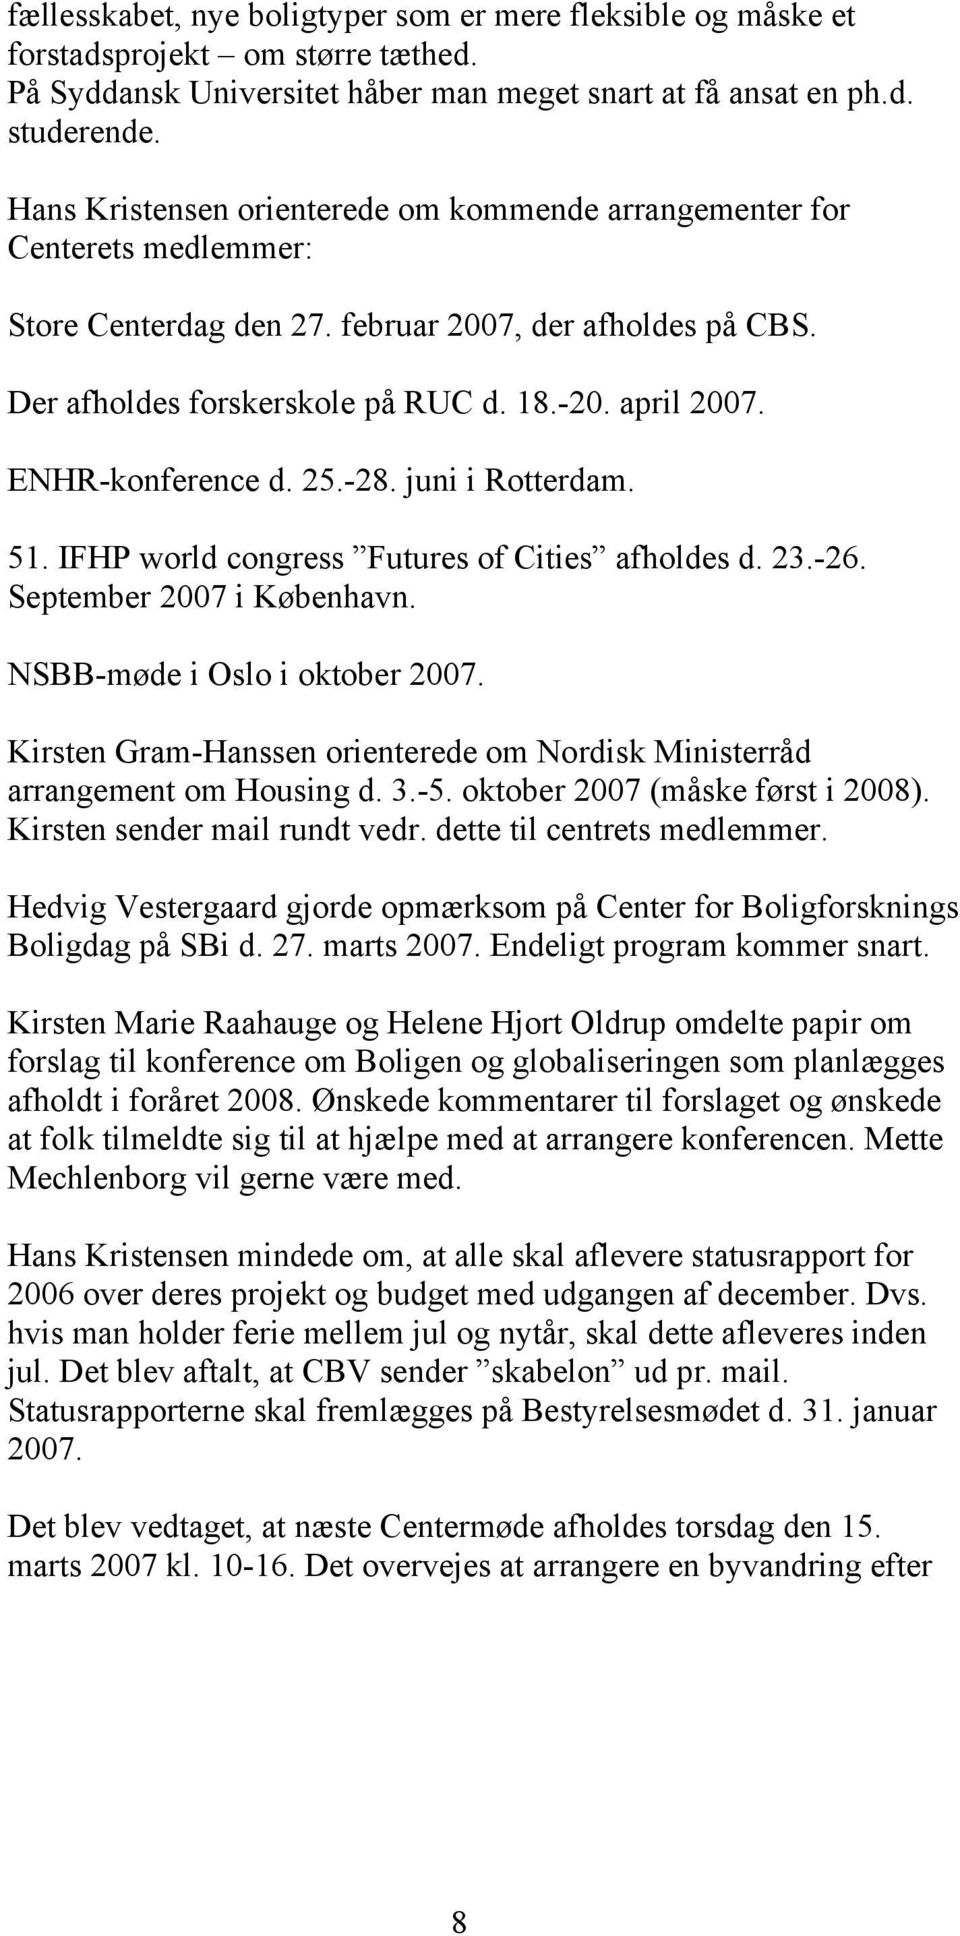 ENHR-konference d. 25.-28. juni i Rotterdam. 51. IFHP world congress Futures of Cities afholdes d. 23.-26. September 2007 i København. NSBB-møde i Oslo i oktober 2007.